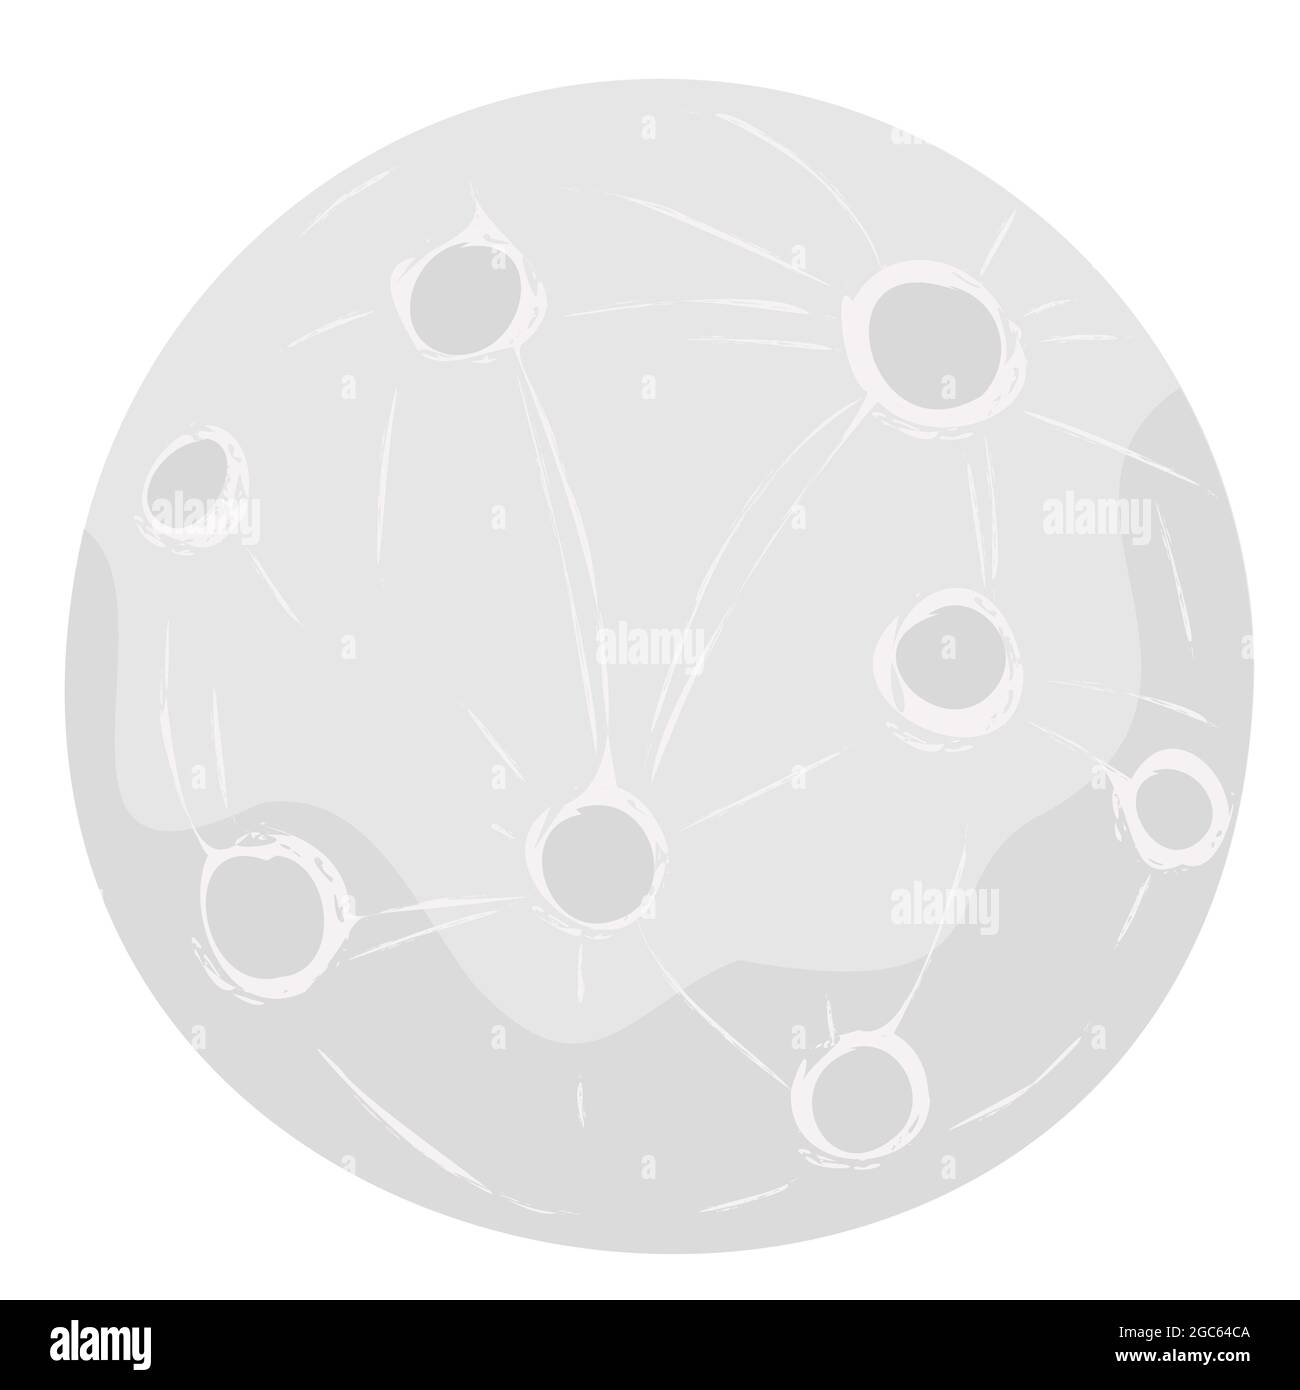 Vollmond-Vektorgrafik mit Krater im Cartoon-Stil isoliert jn weißen Hintergrund. Stock Vektor